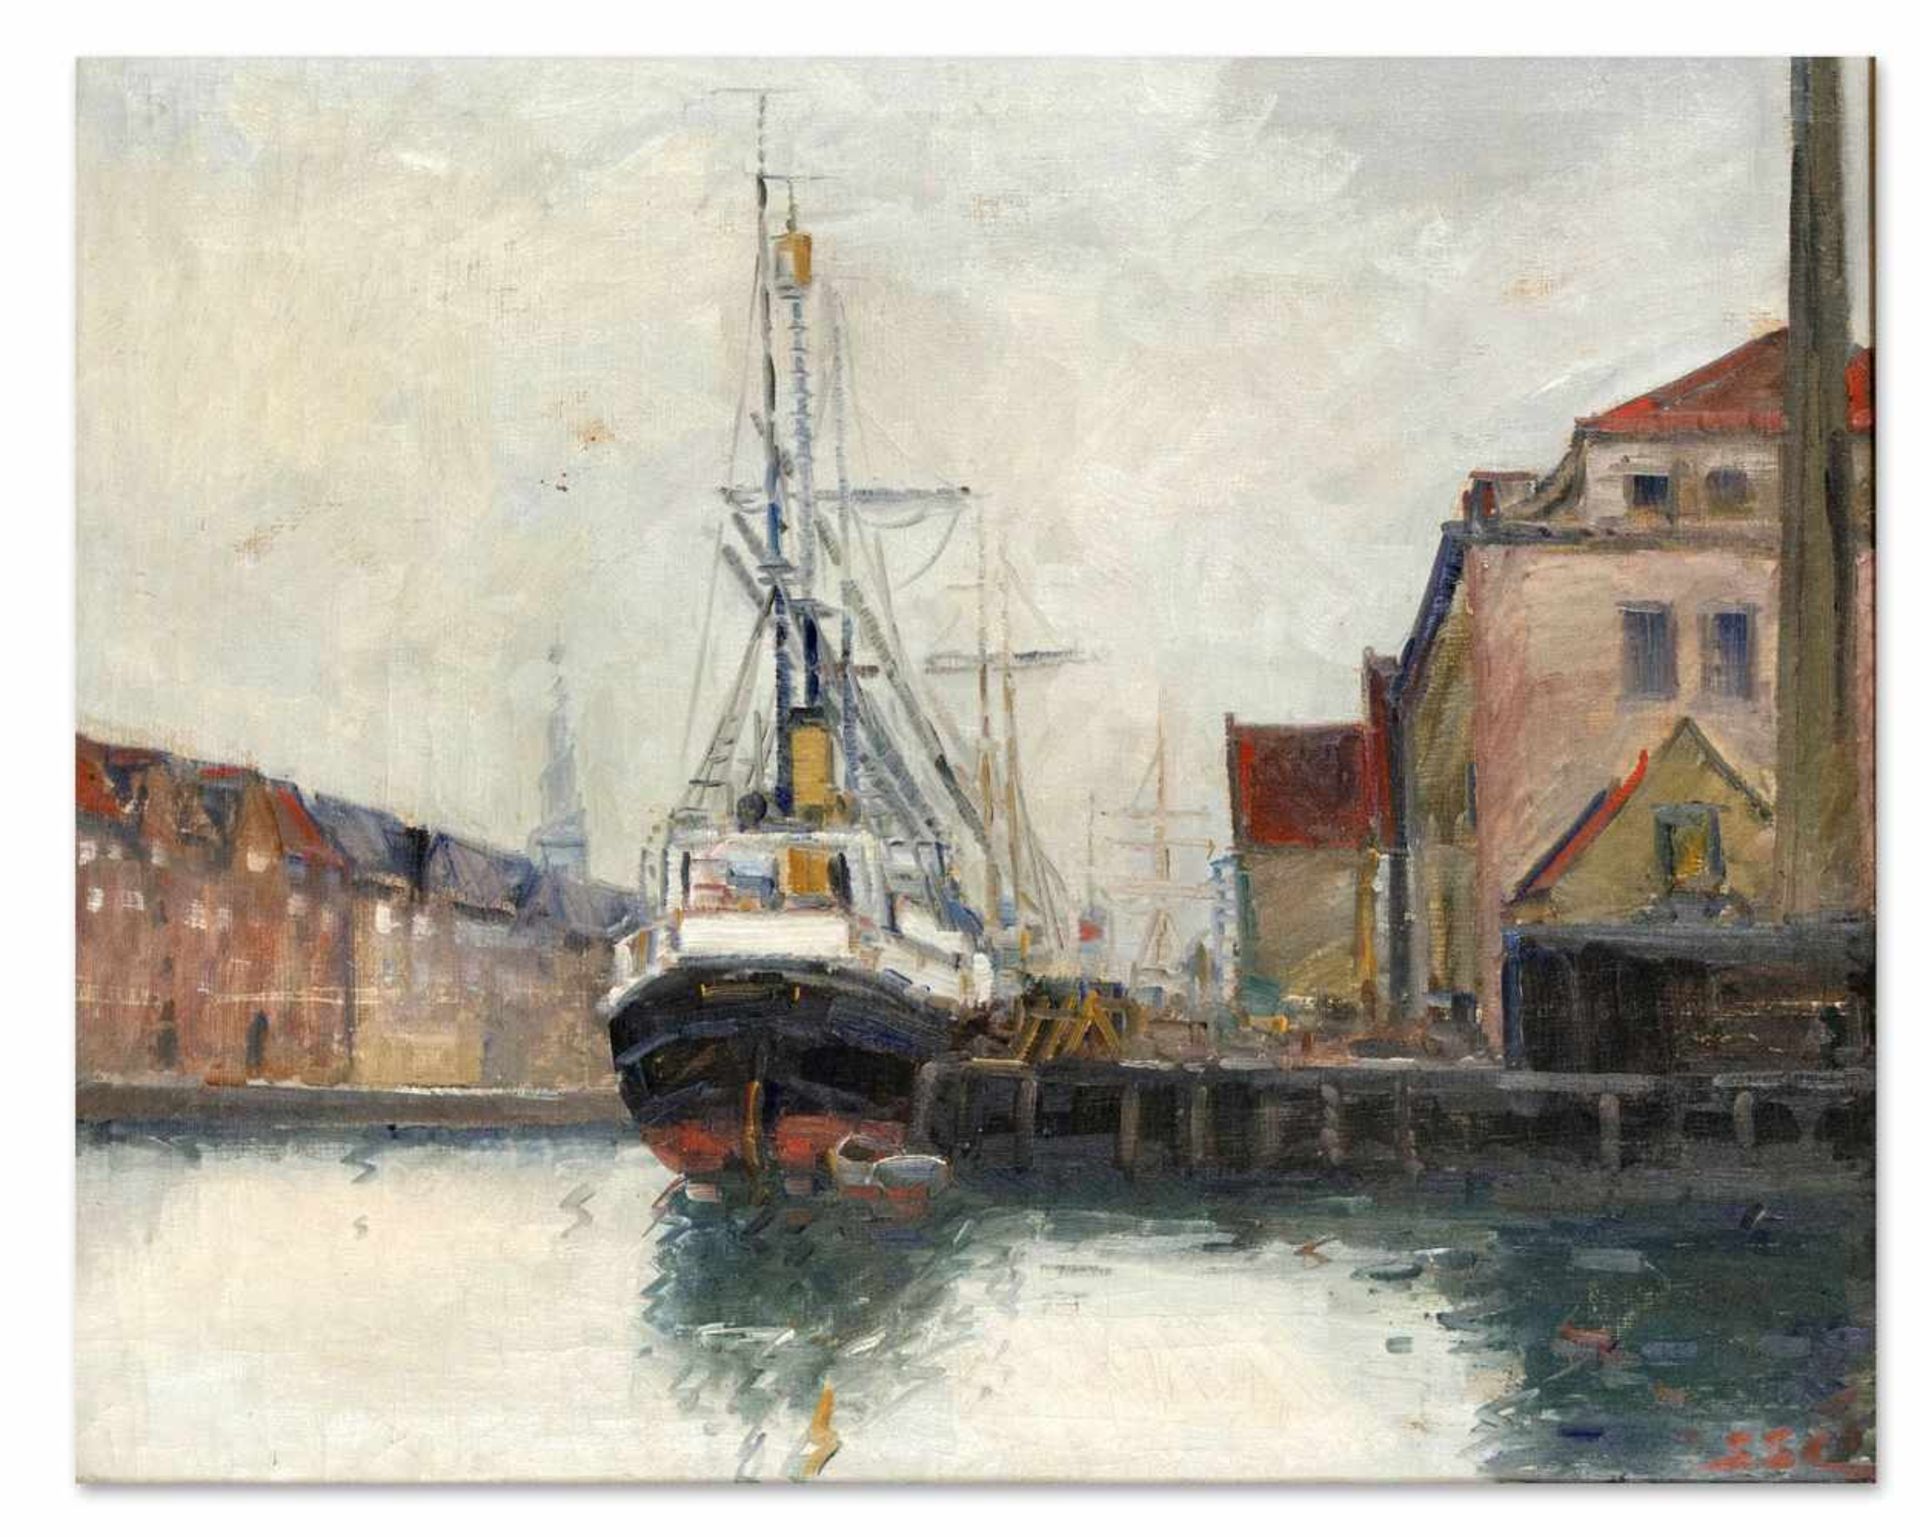 Marinemaler um 1900. Dampfsegler im Hafen. Öl/Lwd., u. re. monogr. SSL, 47 x 58 cm, ger.58 x 69,7